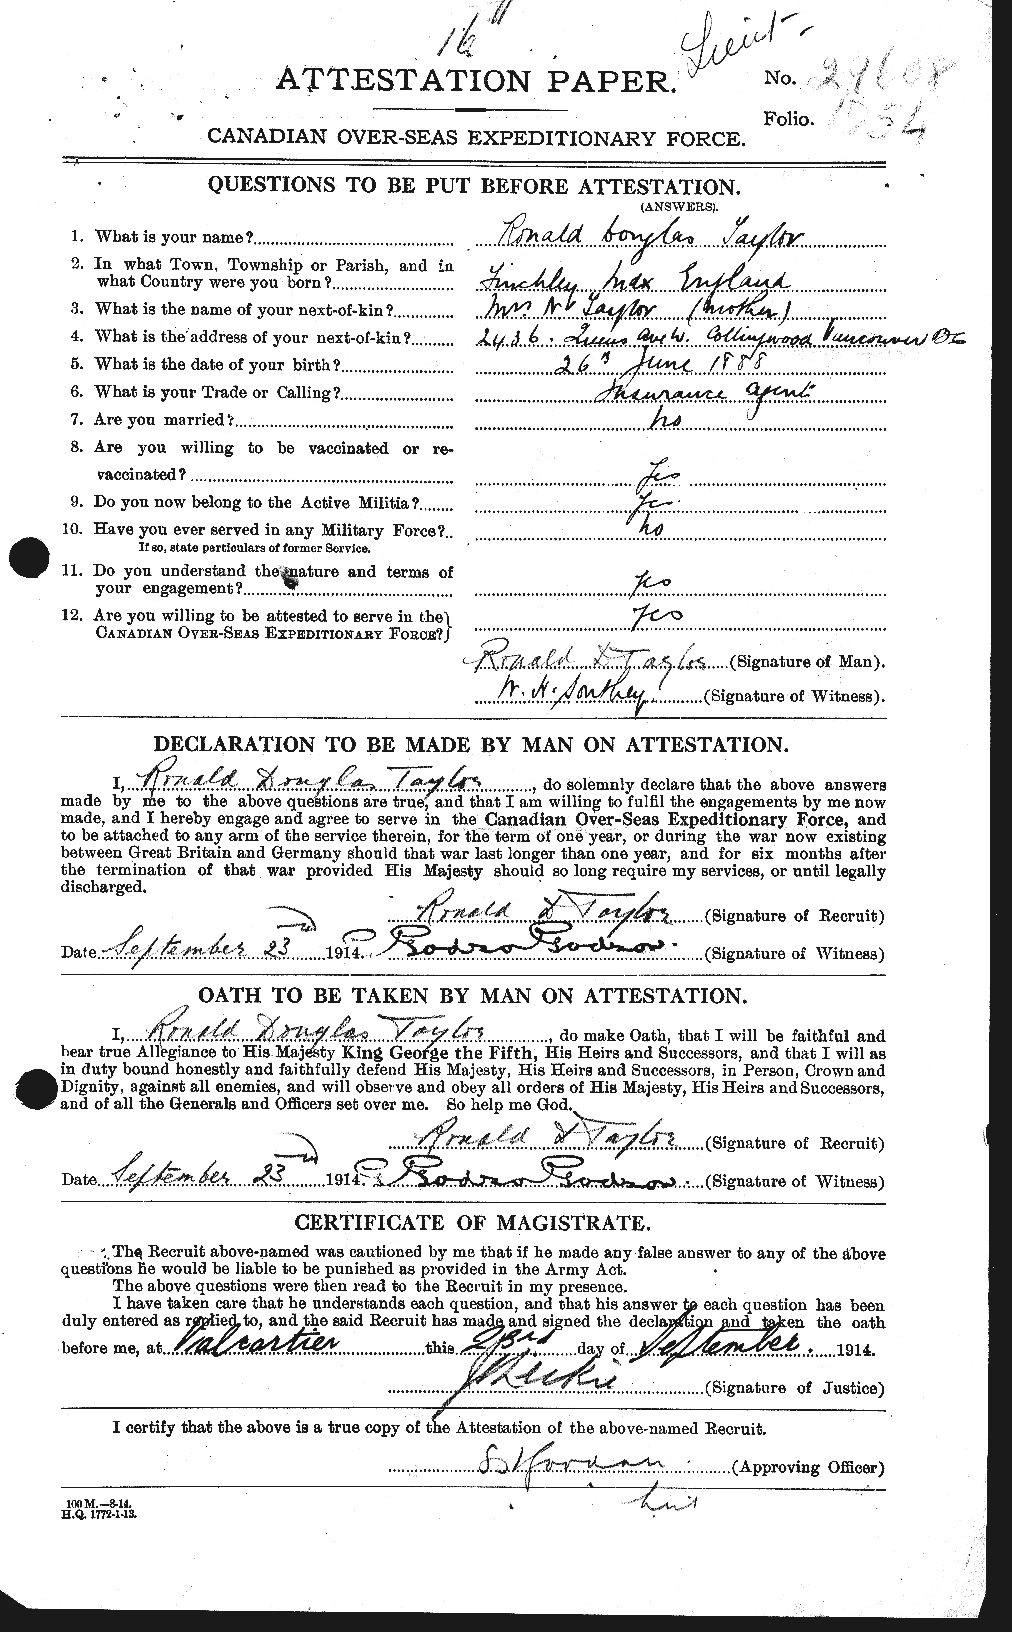 Dossiers du Personnel de la Première Guerre mondiale - CEC 627509a